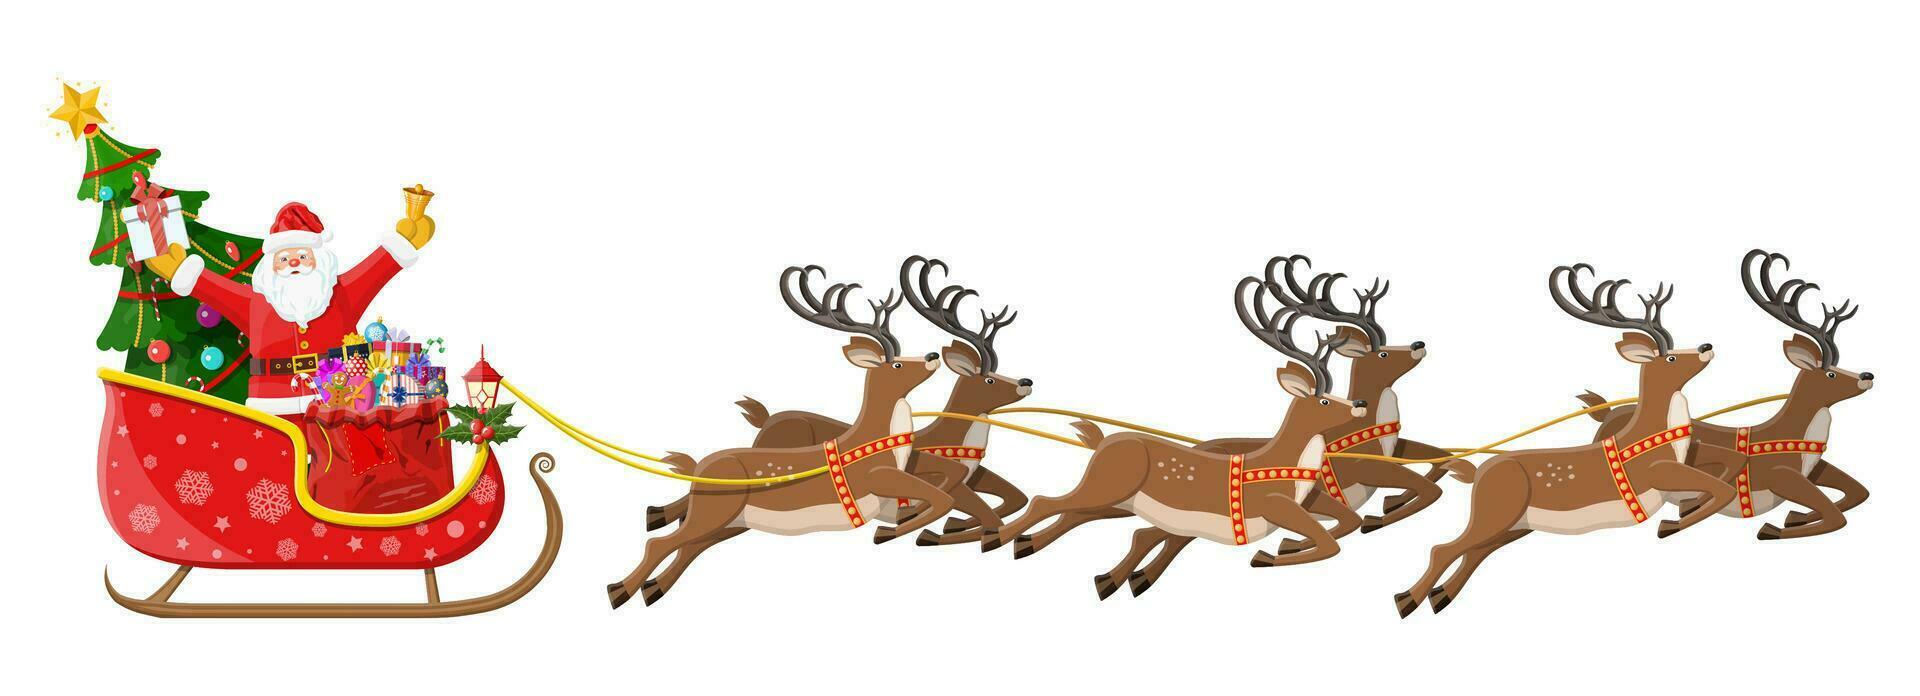 Papa Noel claus en trineo lleno de regalos, Navidad árbol y su renos contento nuevo año decoración. alegre Navidad día festivo. nuevo año y Navidad celebracion. vector ilustración en plano estilo